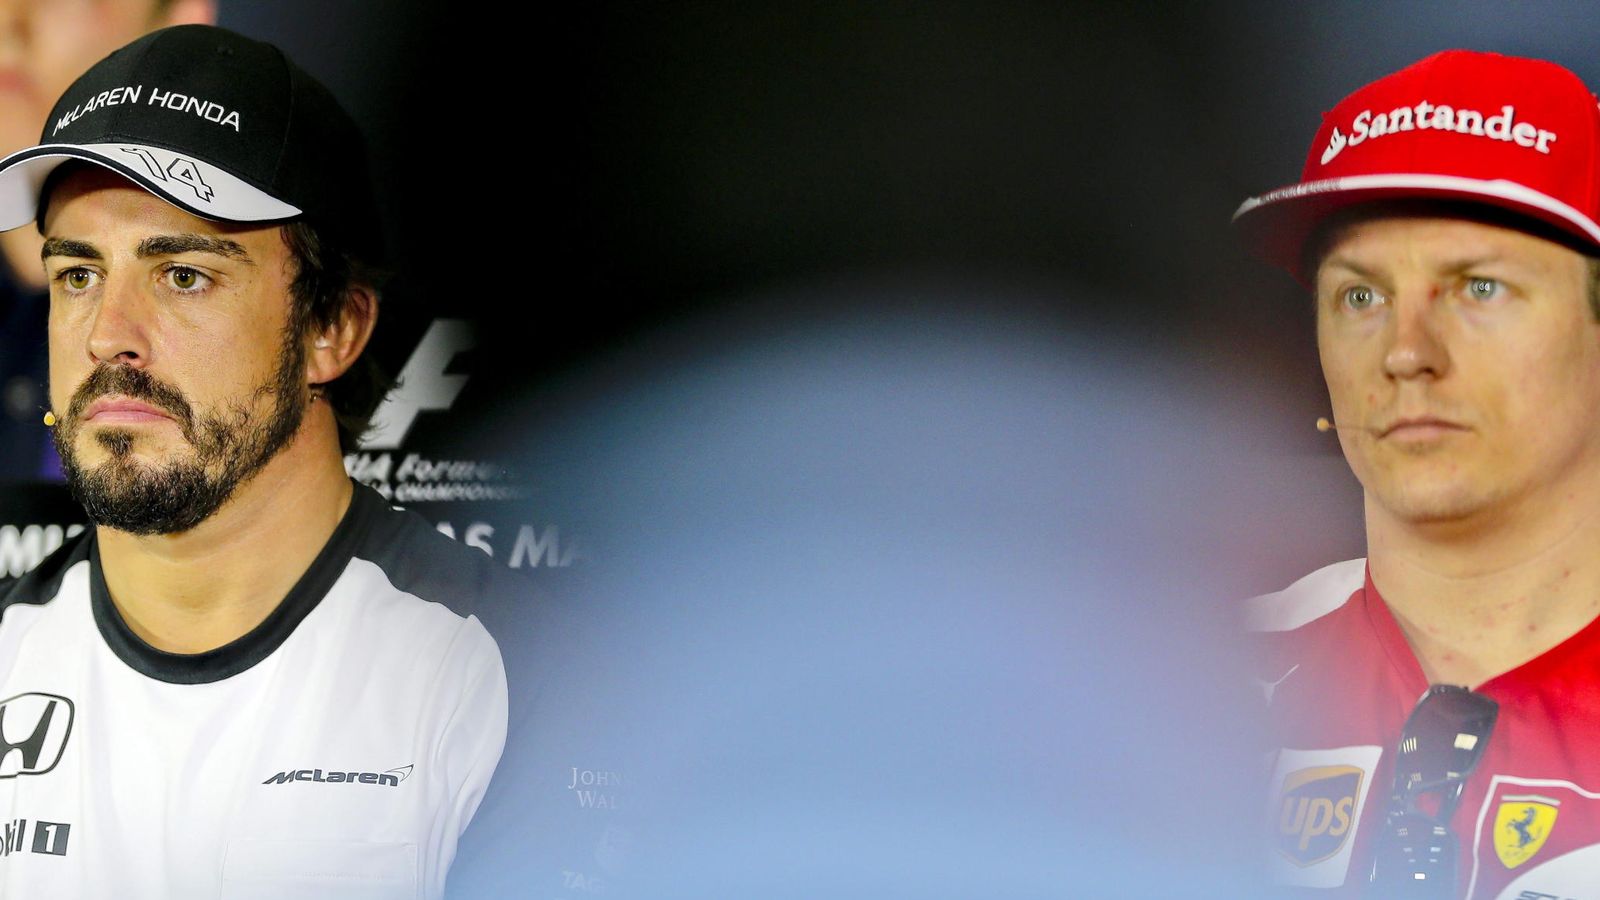 Foto: Fernando Alonso y Kimi Raikkonen han sido elegidos por los jefes de equipo para estar entre los diez mejores pilotos esta temporada (Efe)